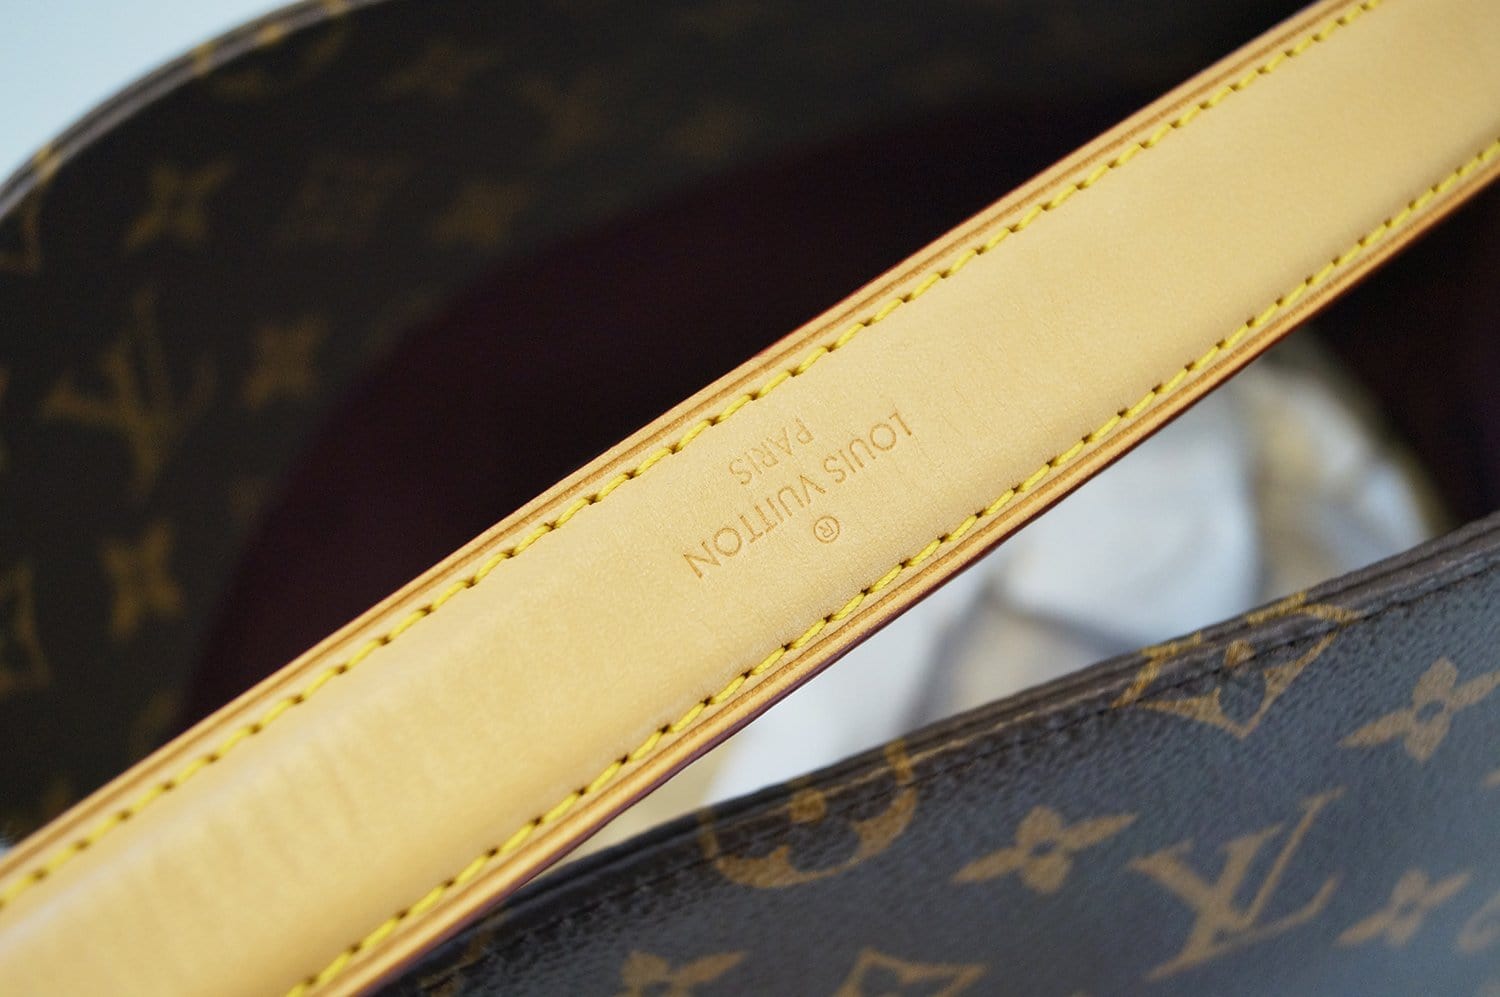 Louis Vuitton Melie Monogram Canvas Top Handle shoulder Strap